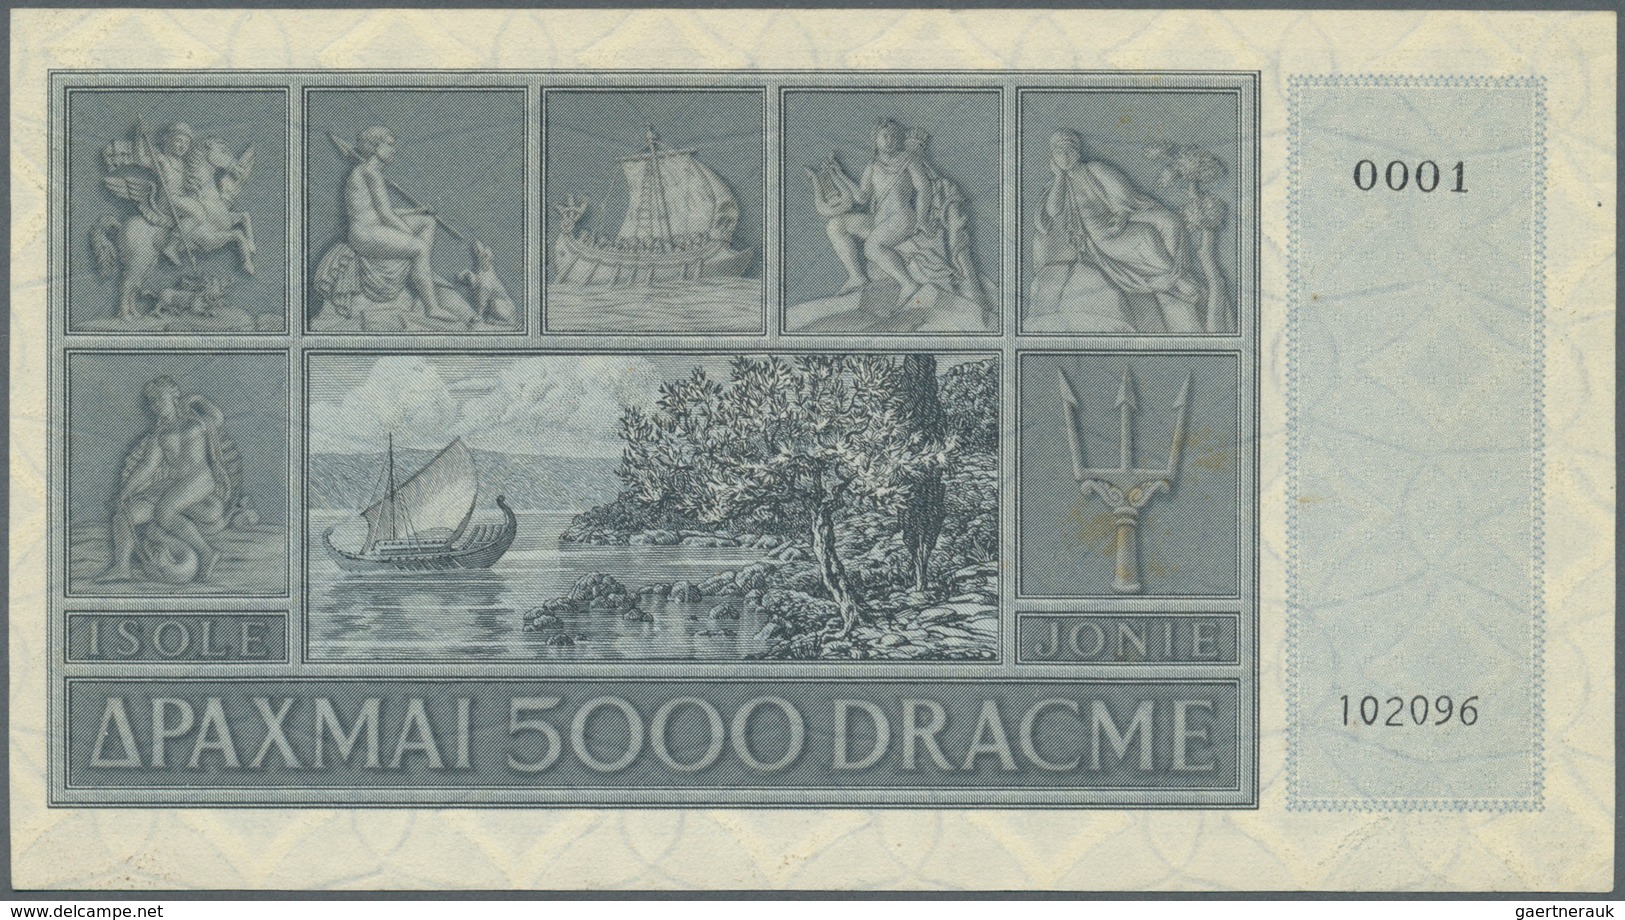 01647 Greece / Griechenland: 5000 Drachmai ND(1941) P. M18a In Condition: UNC. - Grecia